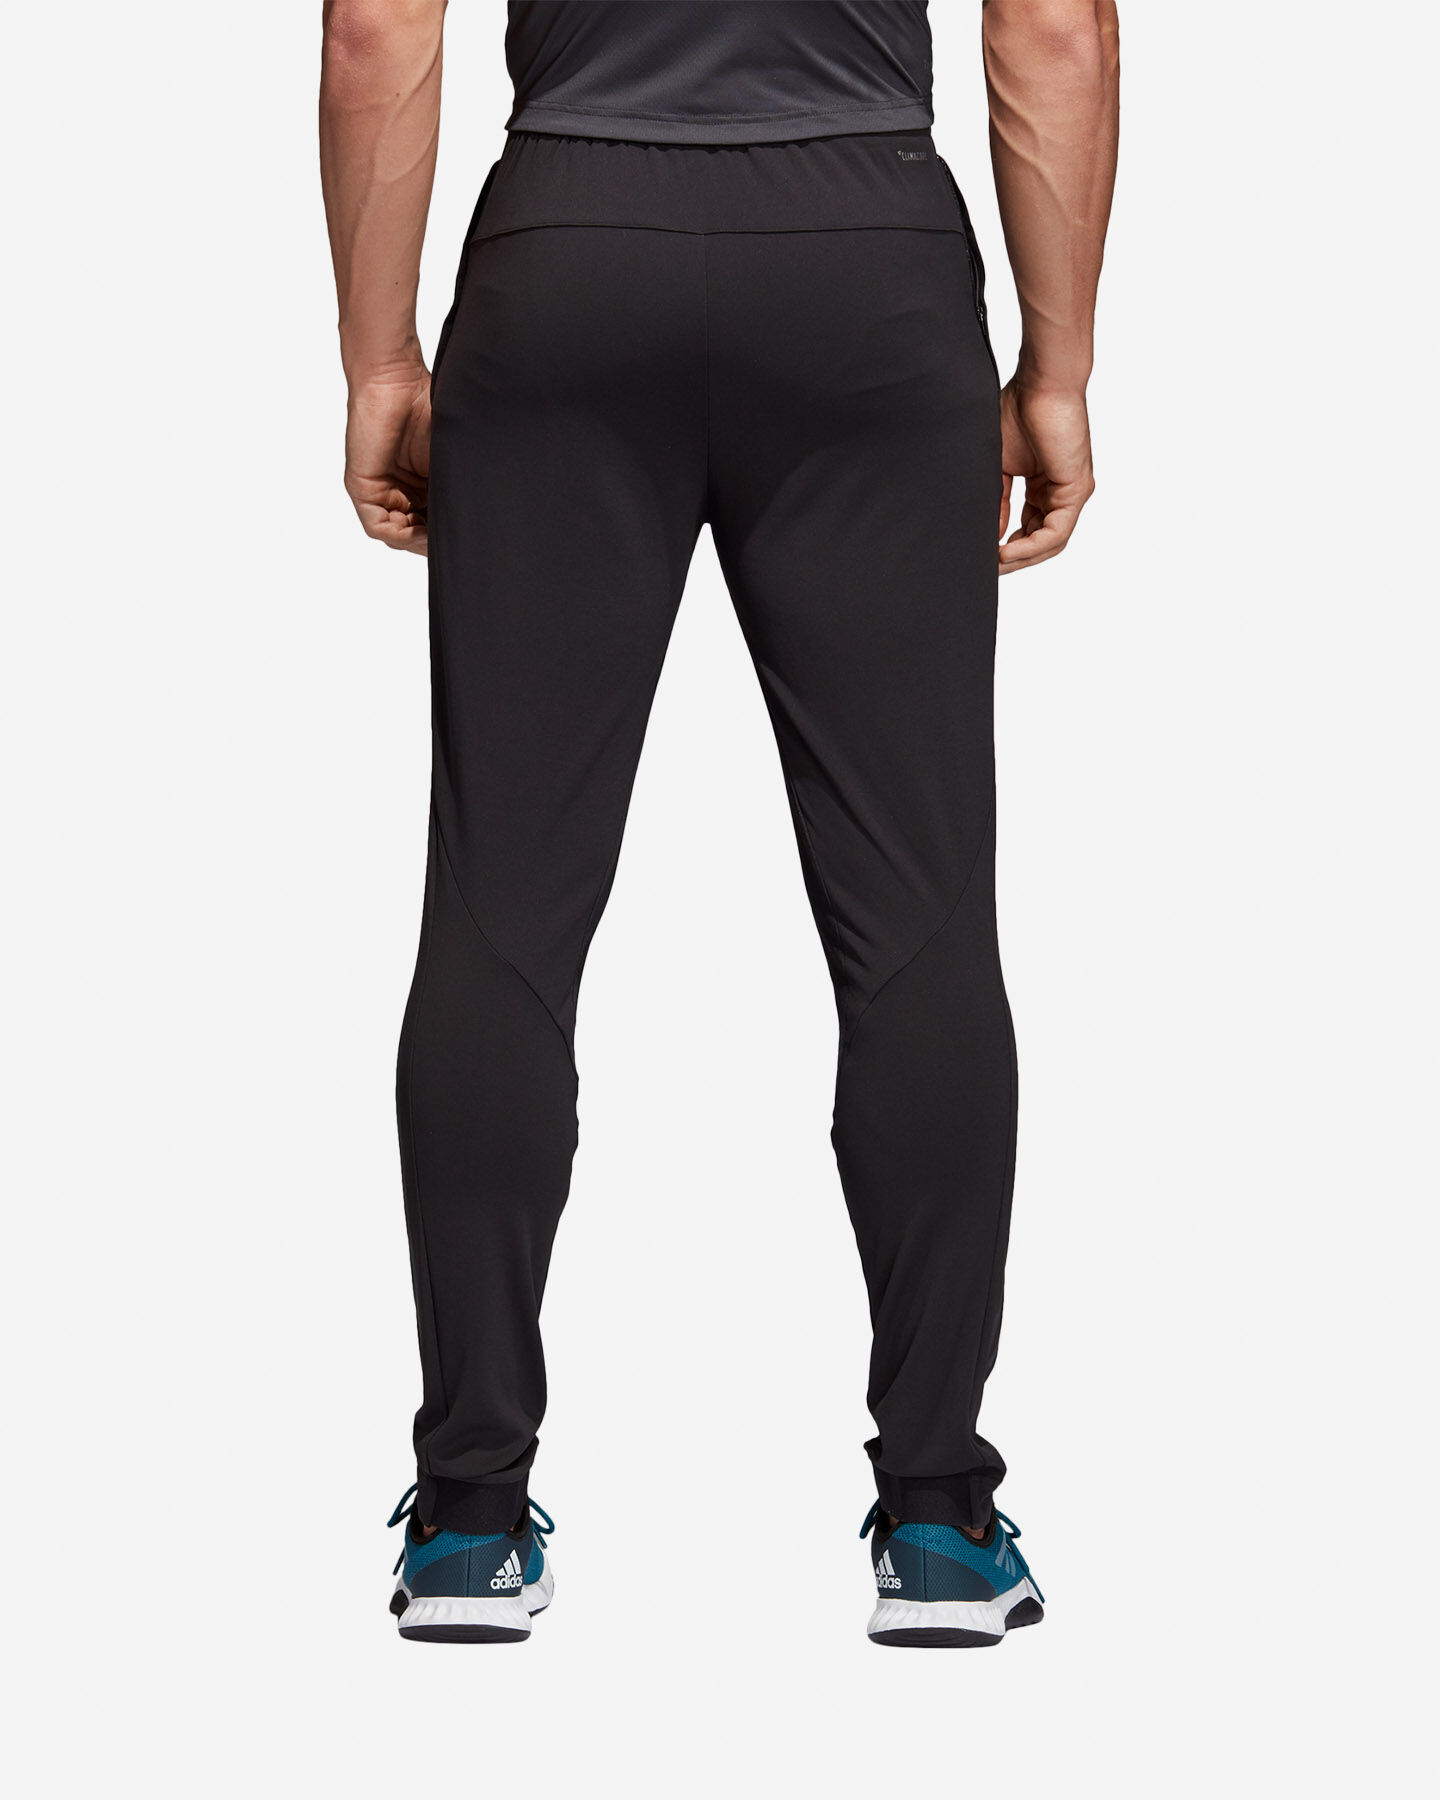 Pantalone Training Adidas Workout Pant Climacool Knit M CG1505 | Cisalfa  Sport